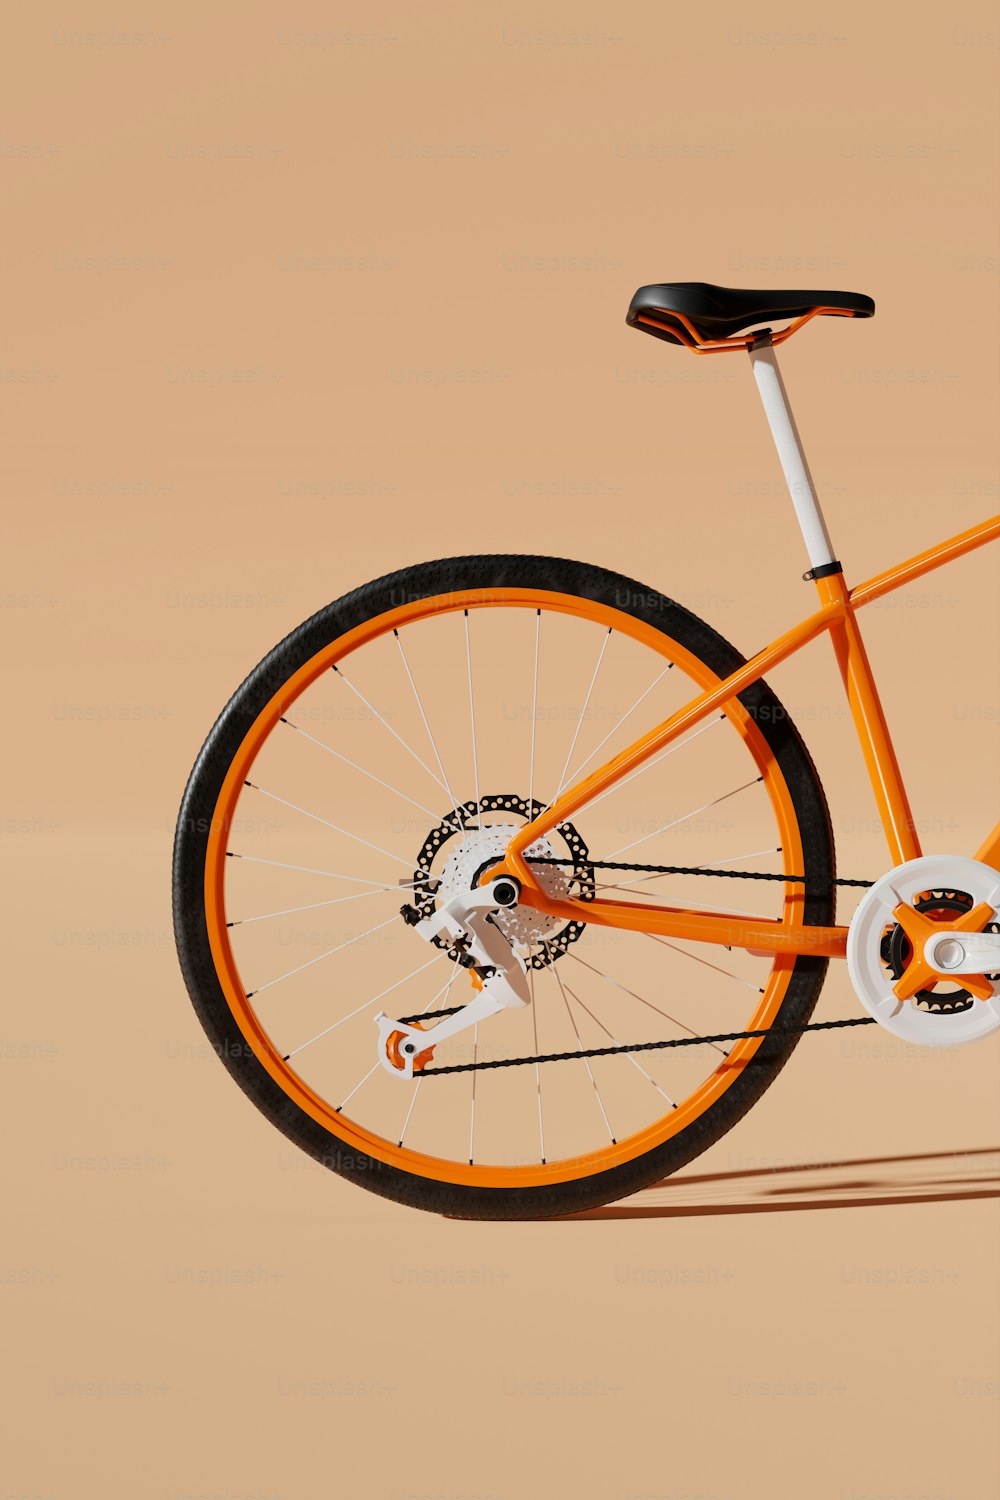 Una bicicleta naranja y blanca se muestra sobre un fondo bronceado